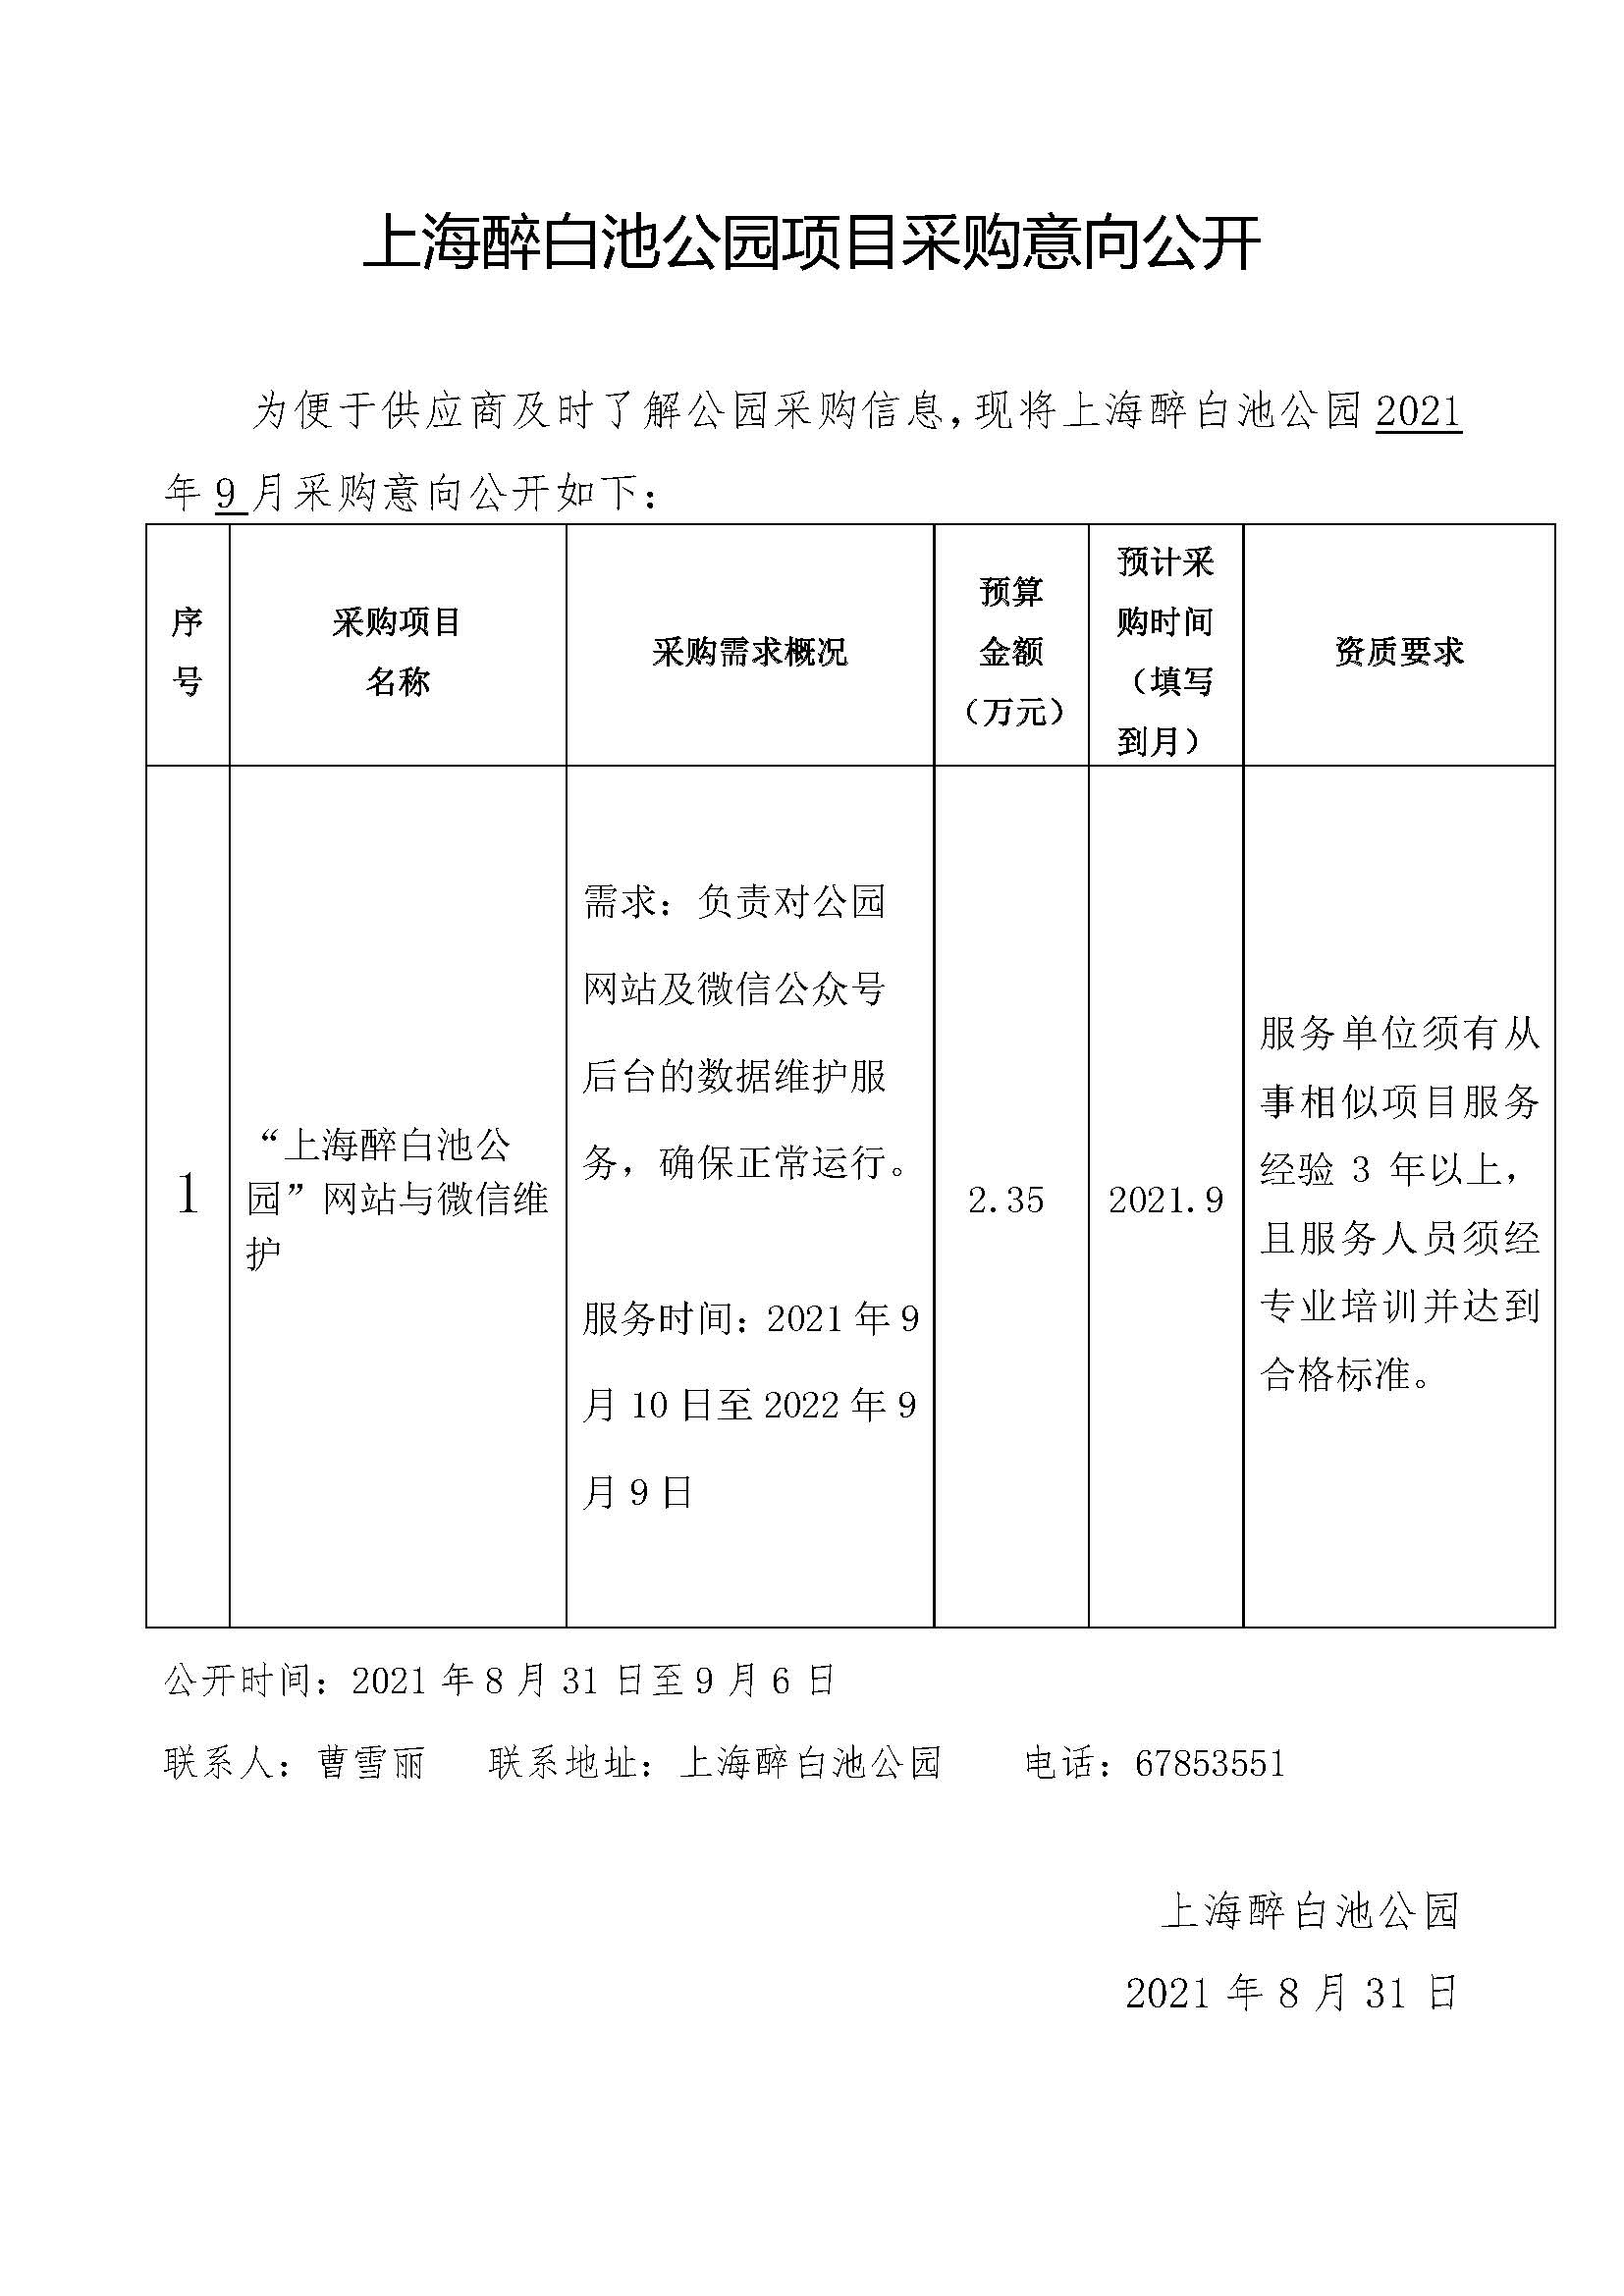 1_2021.8.31上海醉白池公园项目采购意向（网站和微信维护）.jpg